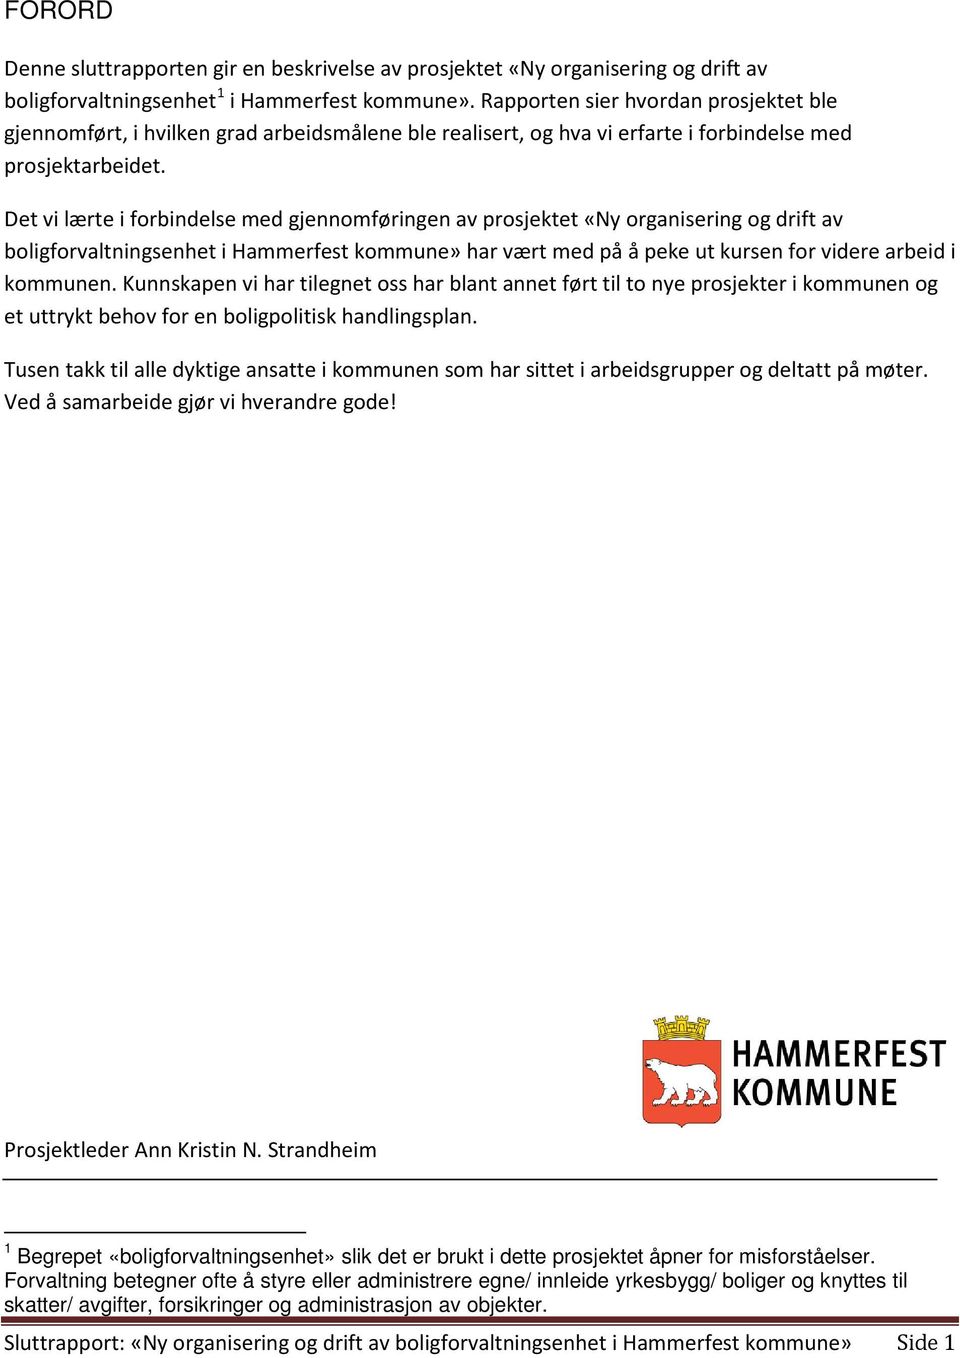 Det vi lærte i forbindelse med gjennomføringen av prosjektet «Ny organisering og drift av boligforvaltningsenhet i Hammerfest kommune» har vært med på å peke ut kursen for videre arbeid i kommunen.